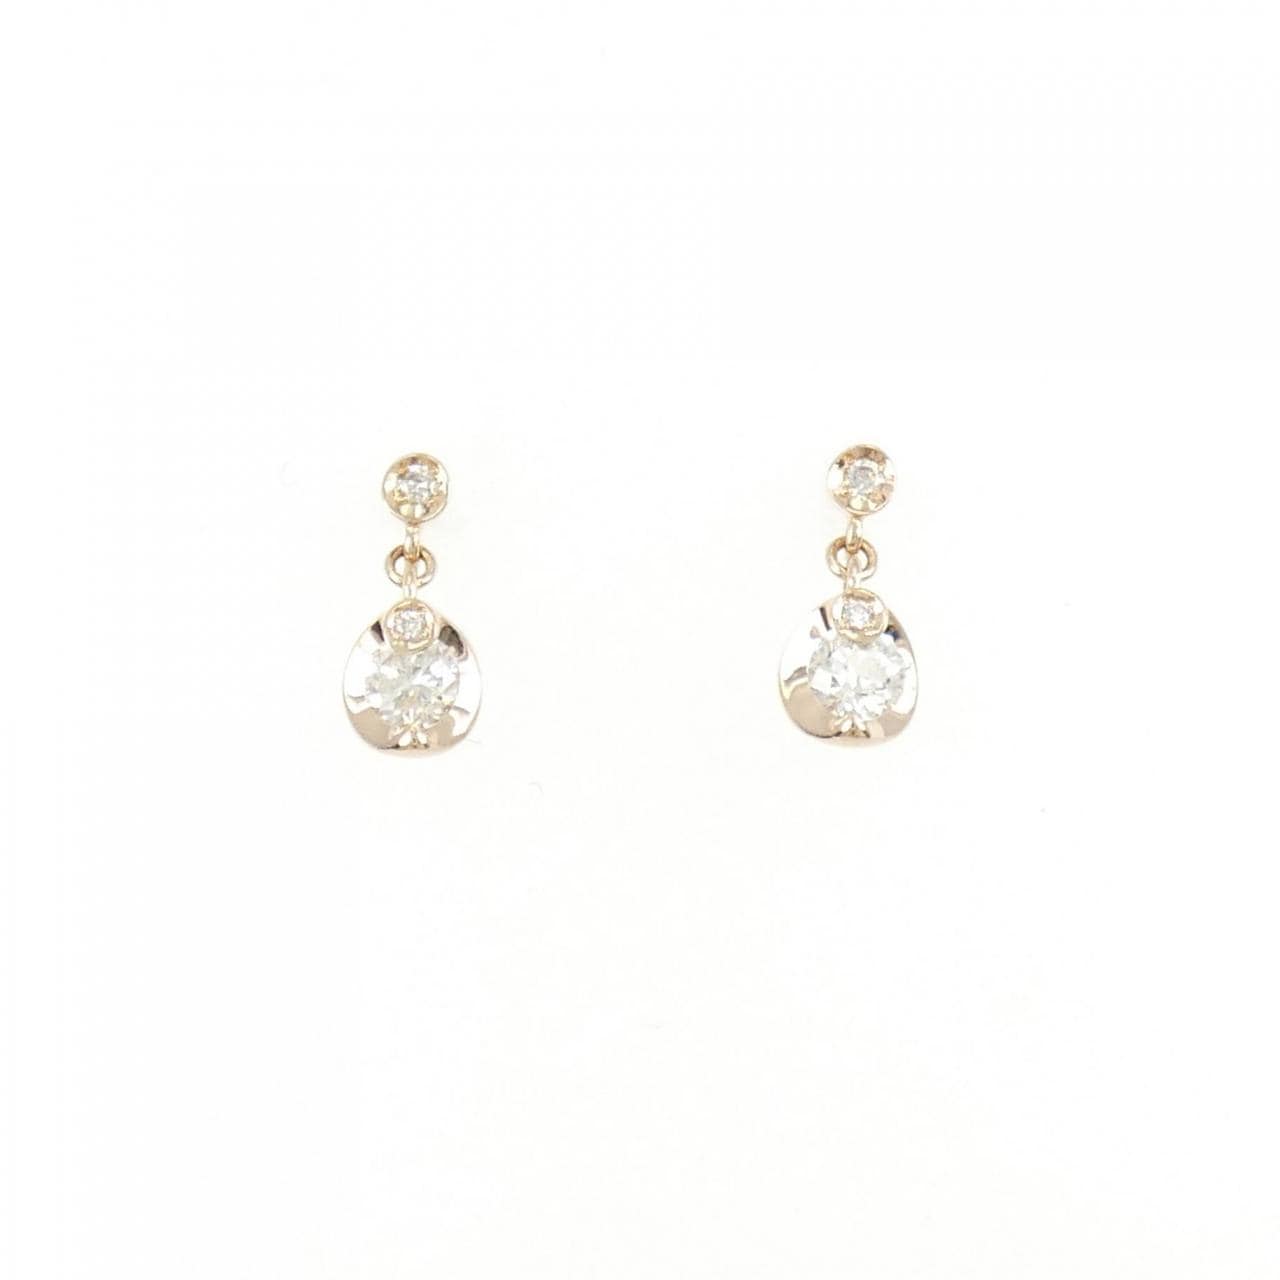 K18PG Diamond earrings 0.226CT